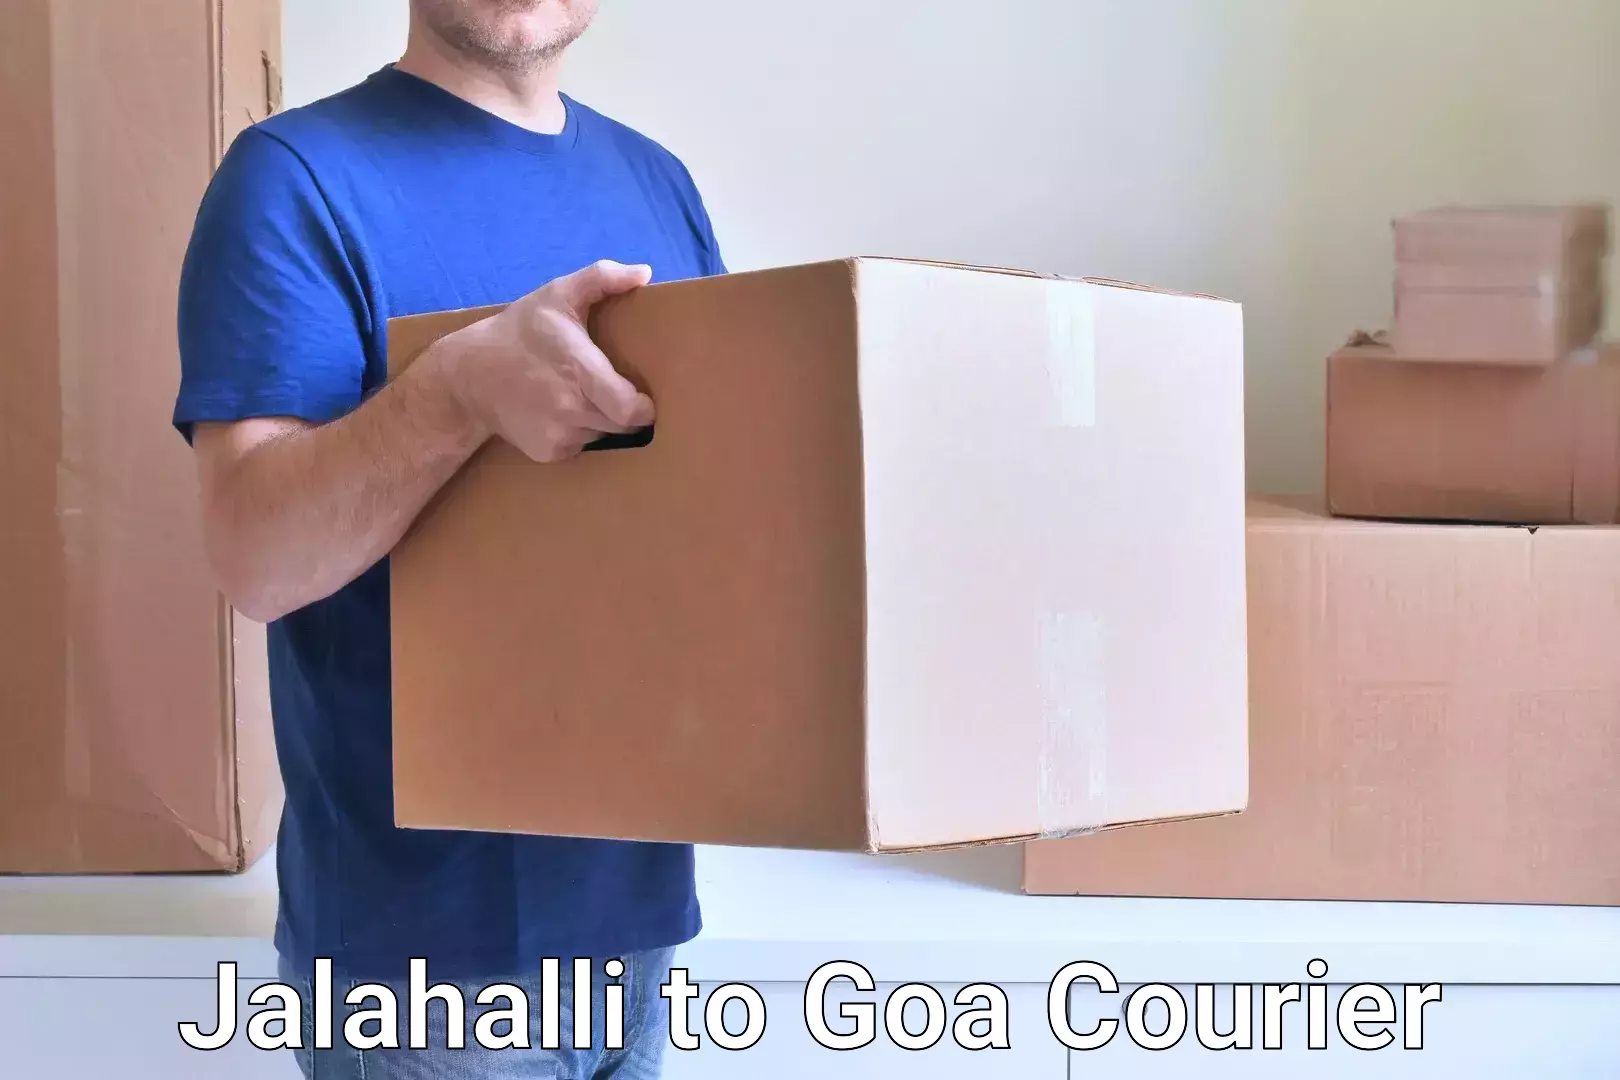 Customized shipping options Jalahalli to Panaji